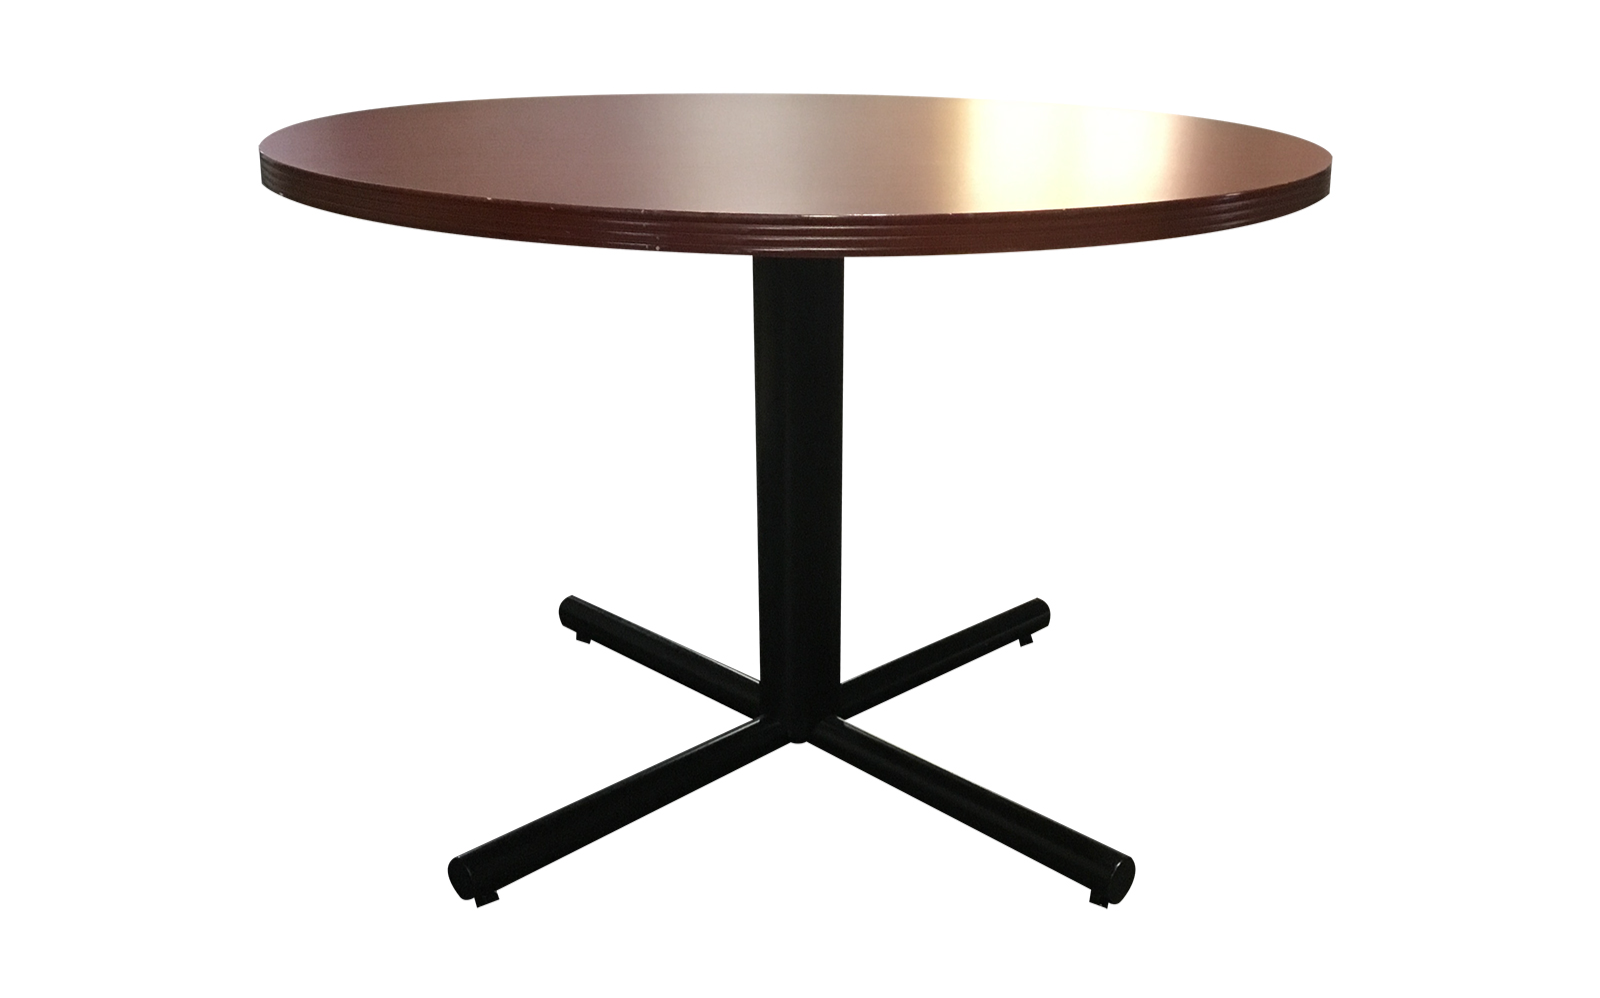 48” ROUND TABLE CHERRY